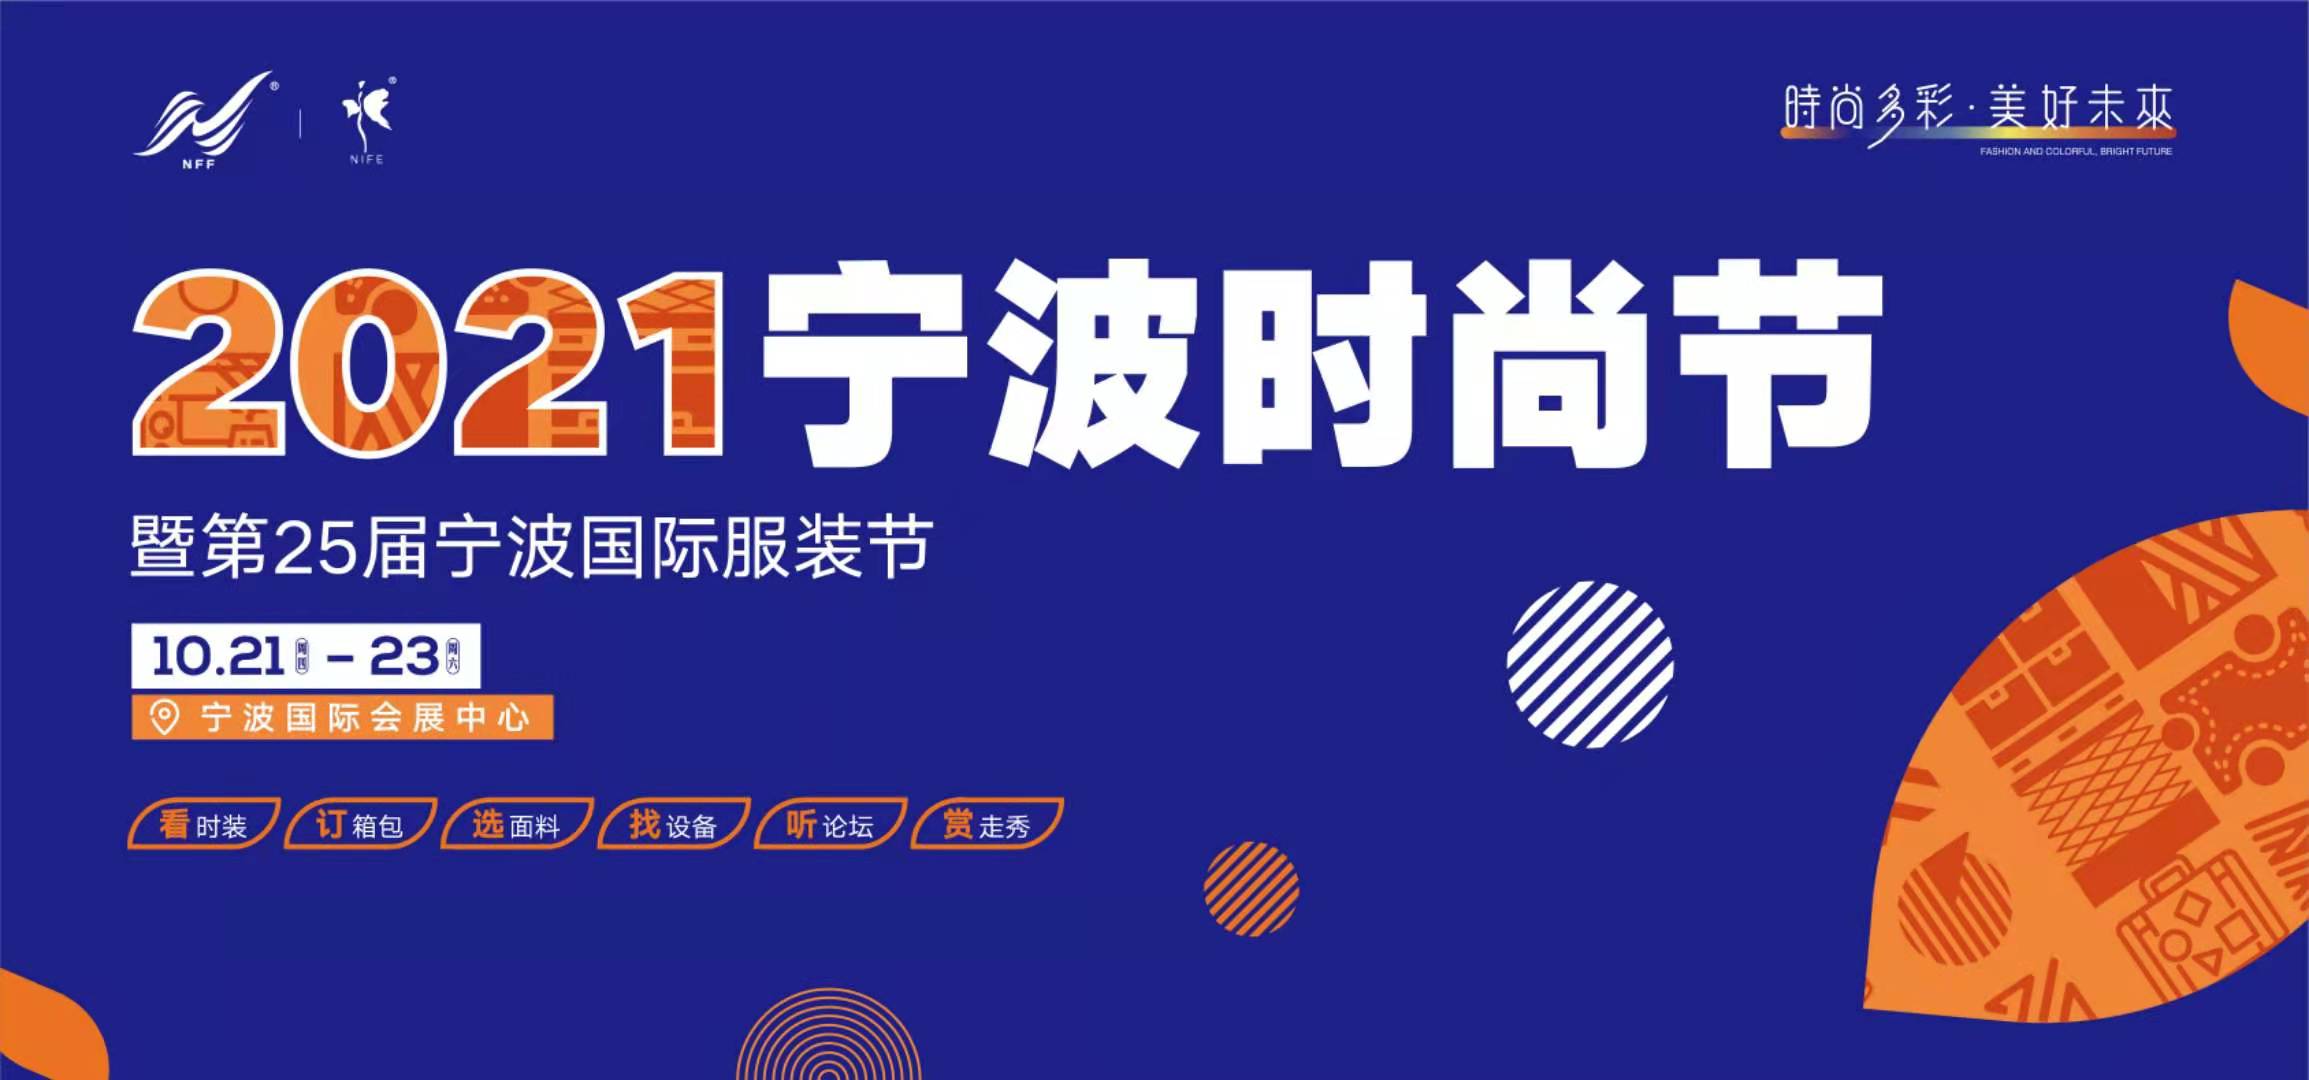 2021宁波时尚节暨第25届宁波国际服装展- 去展网